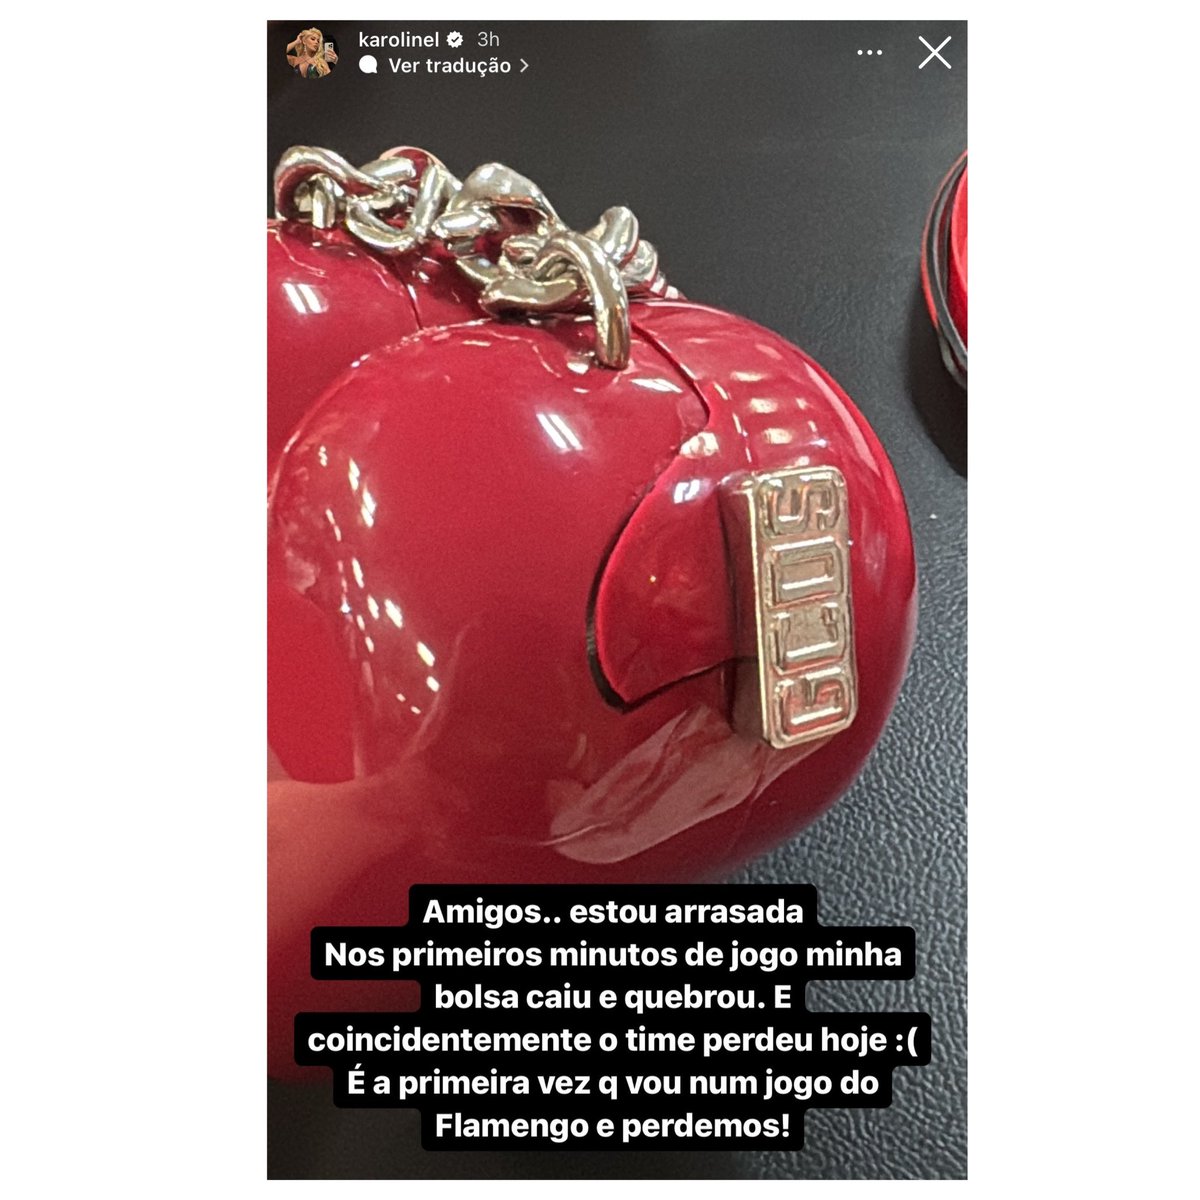 🚨VEJA: Karoline Lima, namorada do jogador Léo Pereira, desabafa dizendo sobre a sua bolsa que tinha quebrado e afirmou que por coincidência o Flamengo perdeu o jogo de hoje.